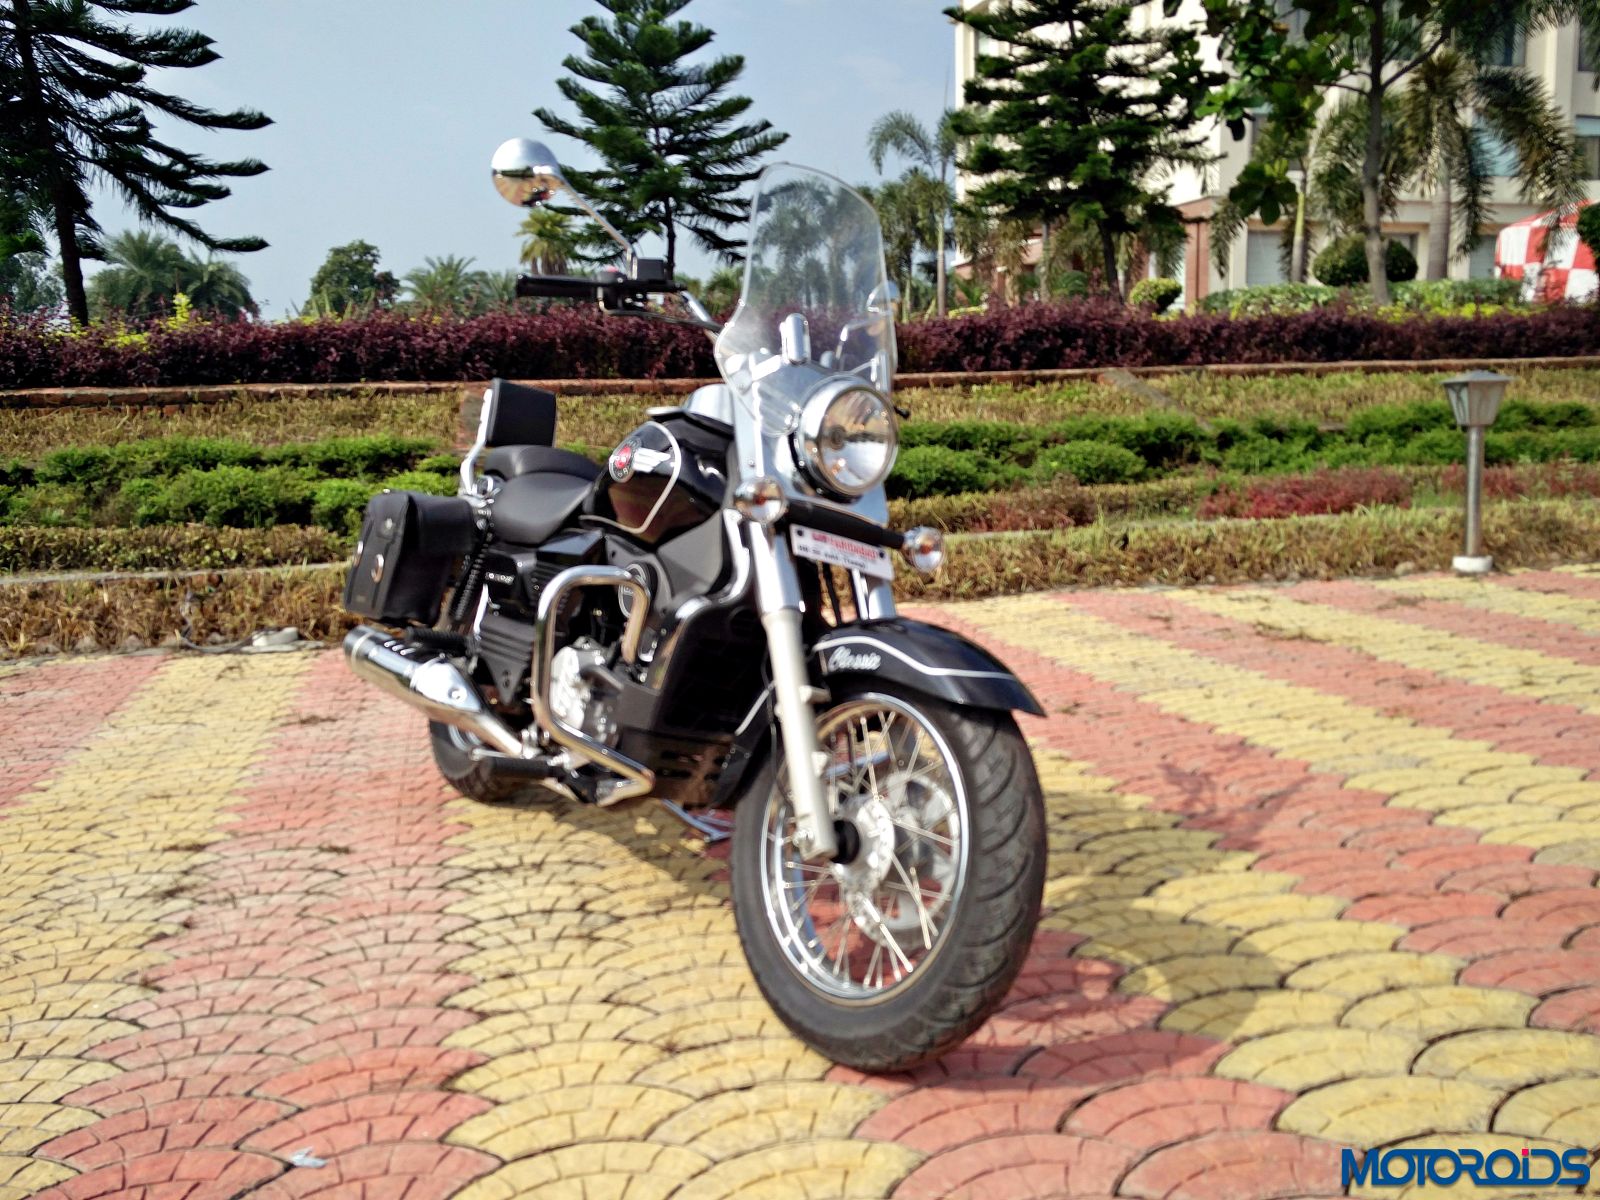 UM Motorcycles Renegade 2017 Classic - Price in India, Mileage